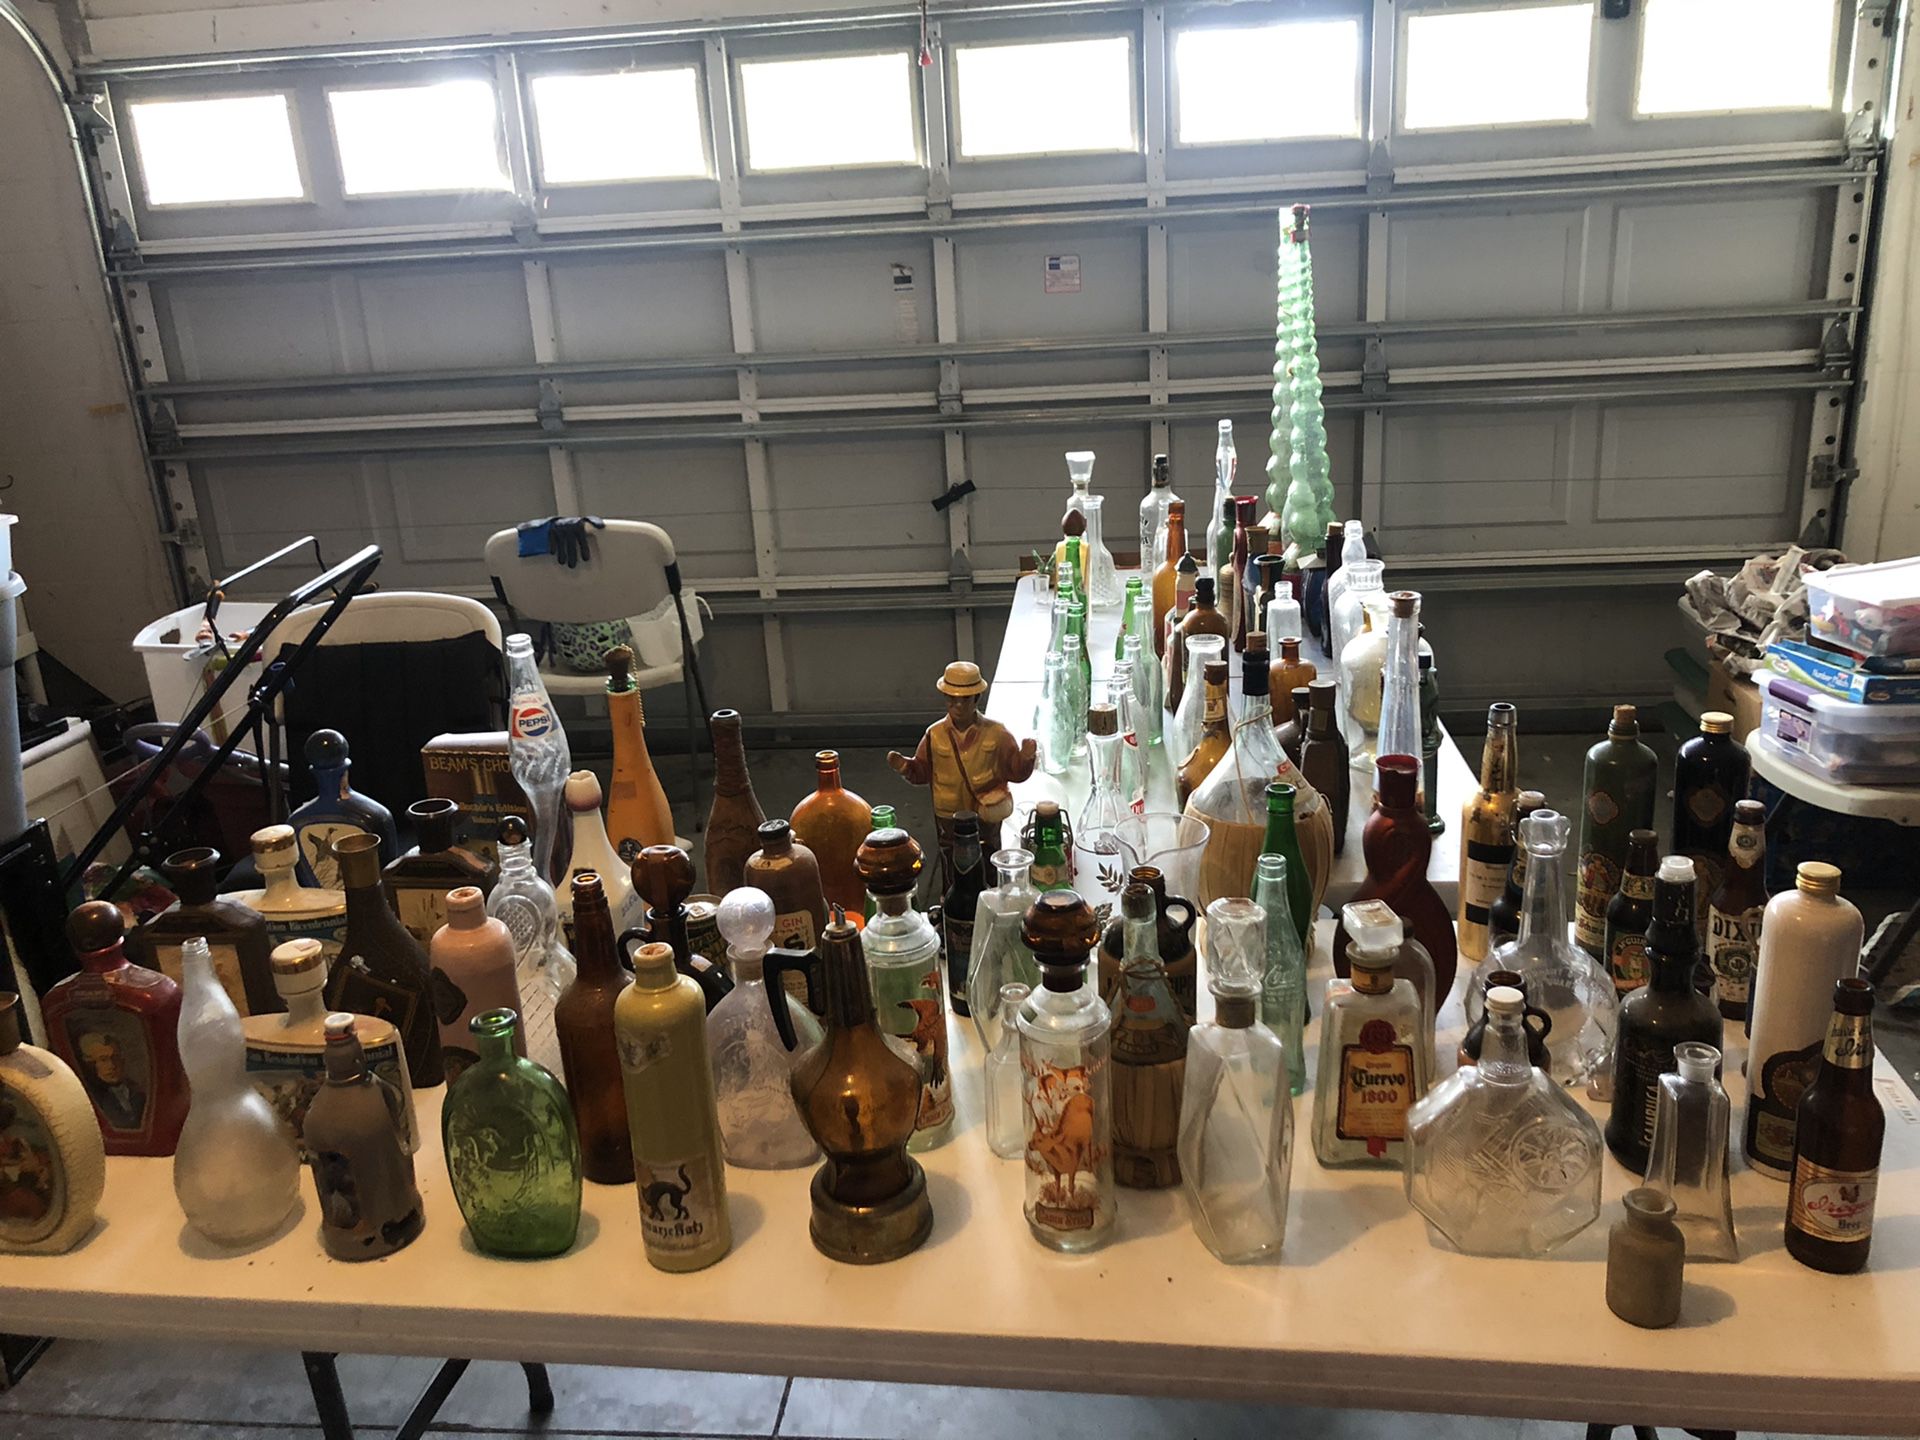 Vintage Bottle Collection - Over 100 Bottles!